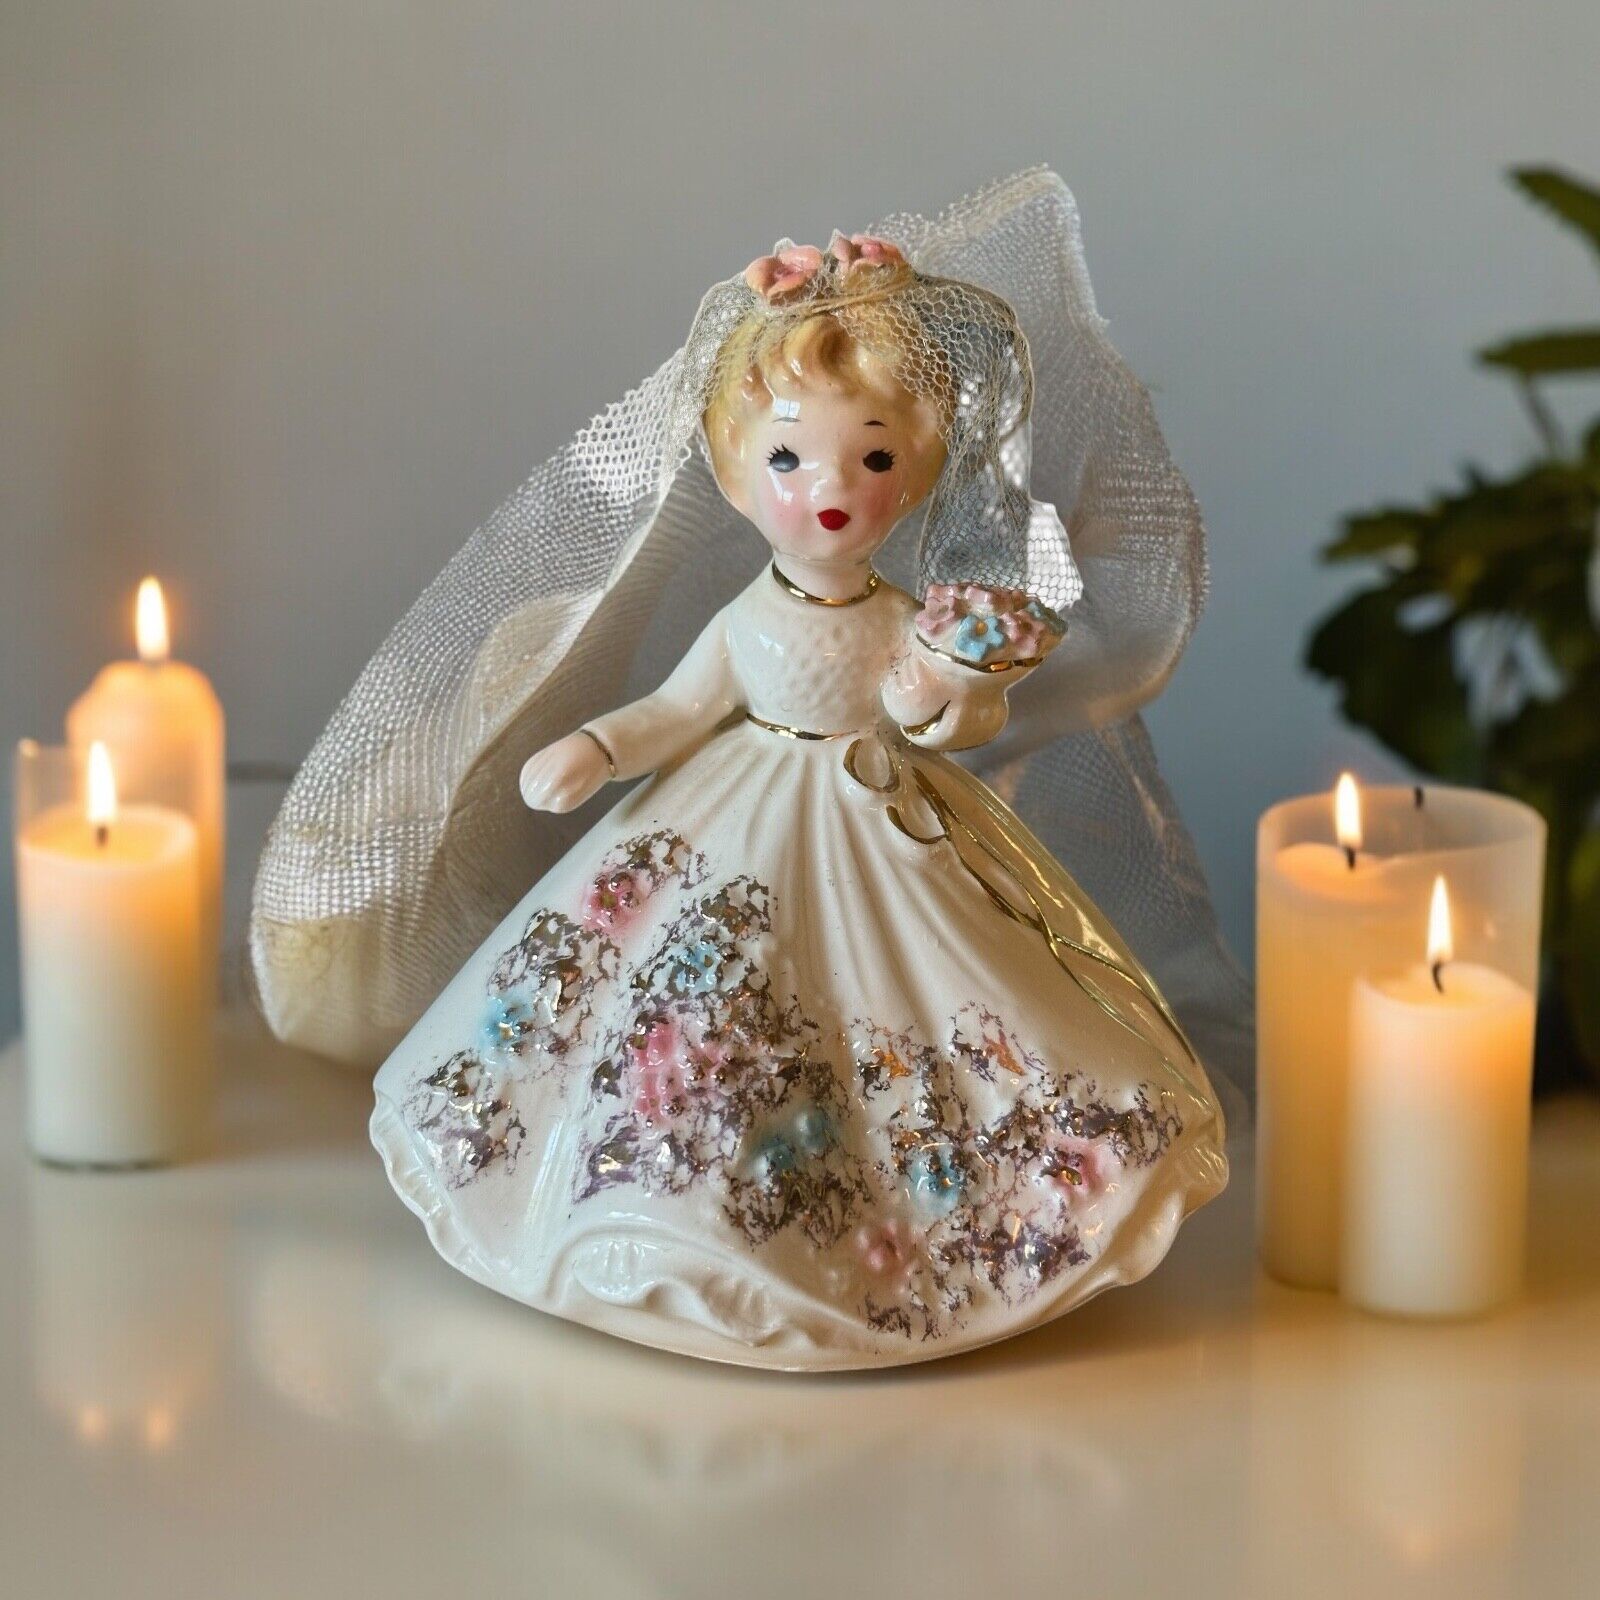 Vintage Josef Originals Bride 1950's Mid Century Collectible Figurine Signed